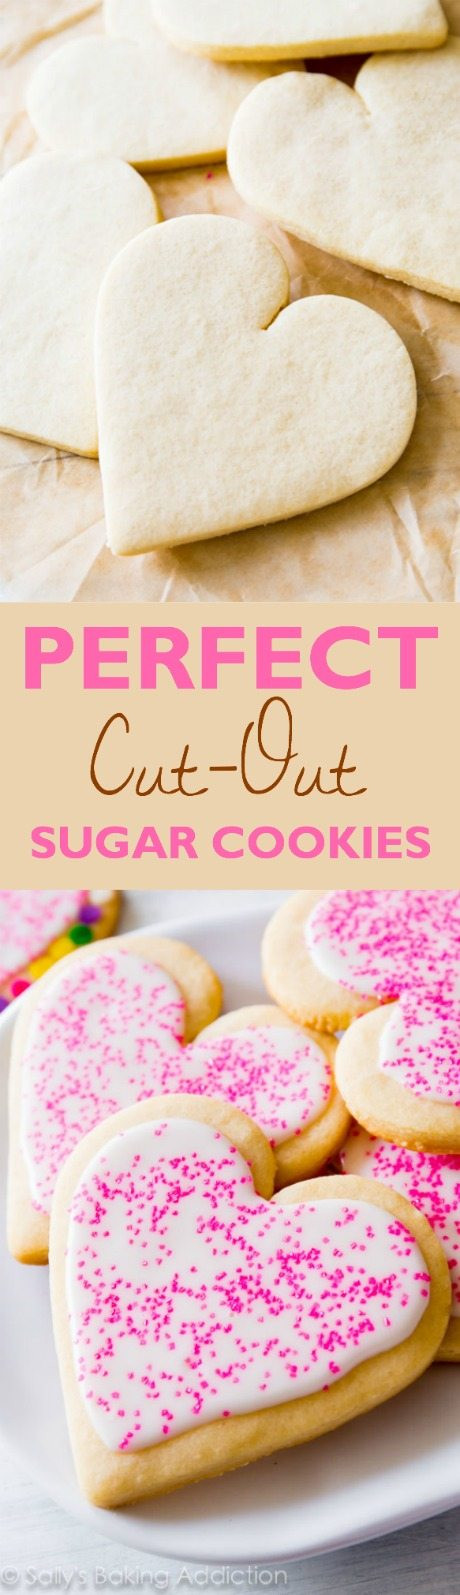 Cookie Cutter Sugar Cookies
 The Best Sugar Cookies Recipe & Video